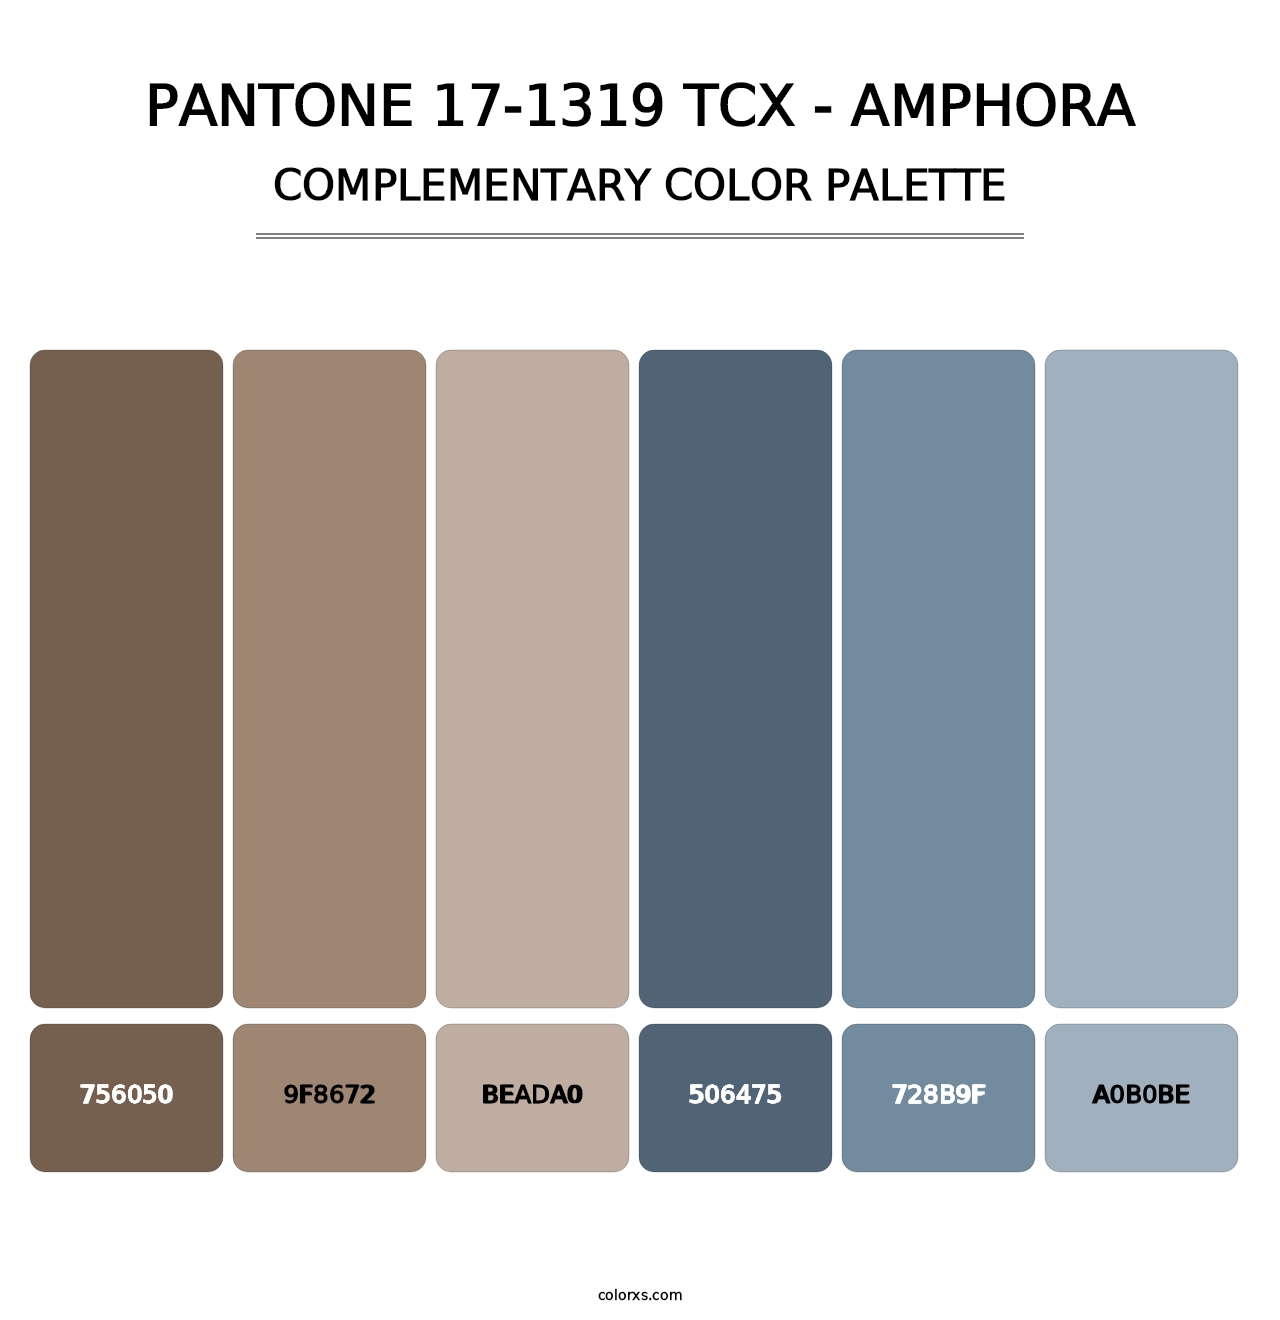 PANTONE 17-1319 TCX - Amphora - Complementary Color Palette